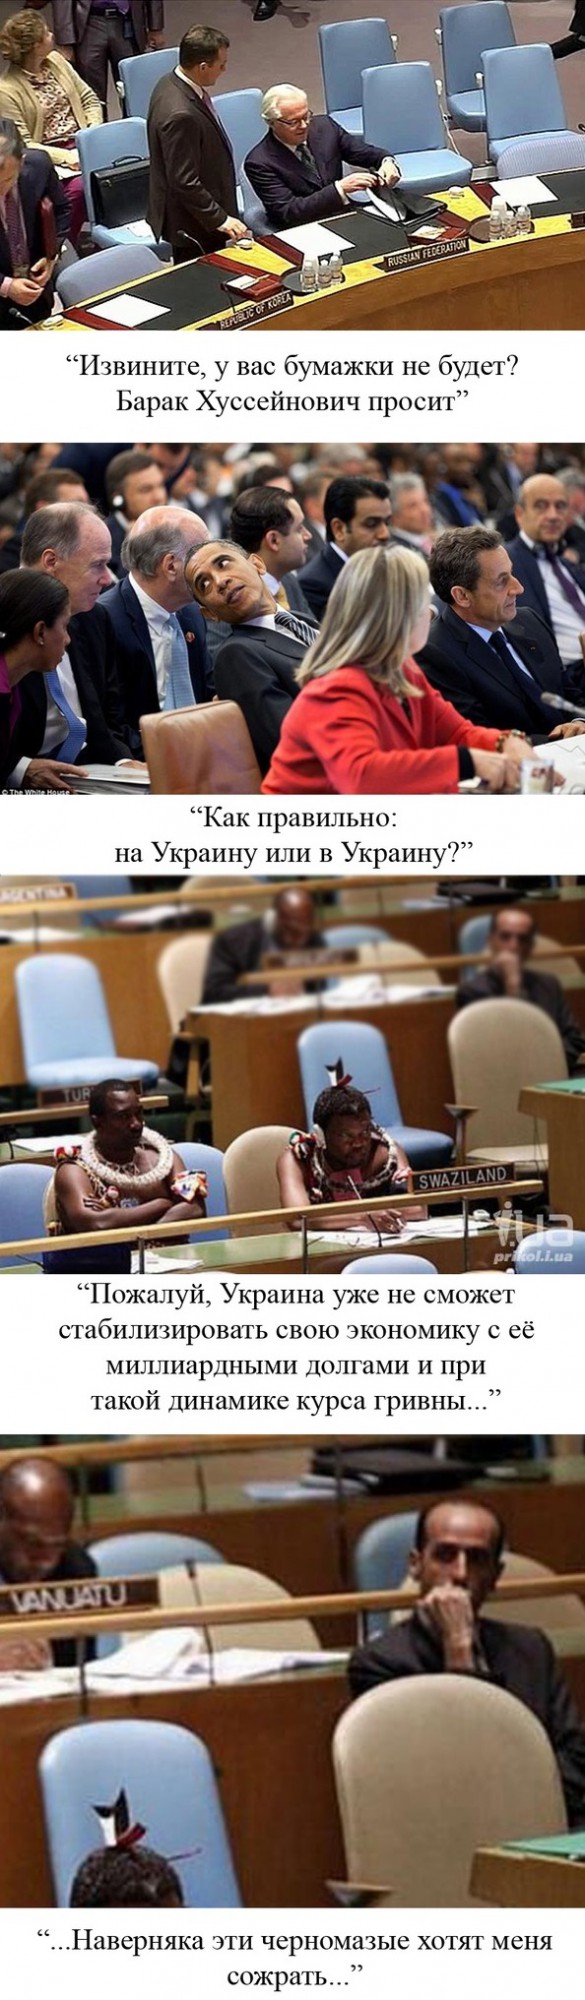 Типичный день в ООН